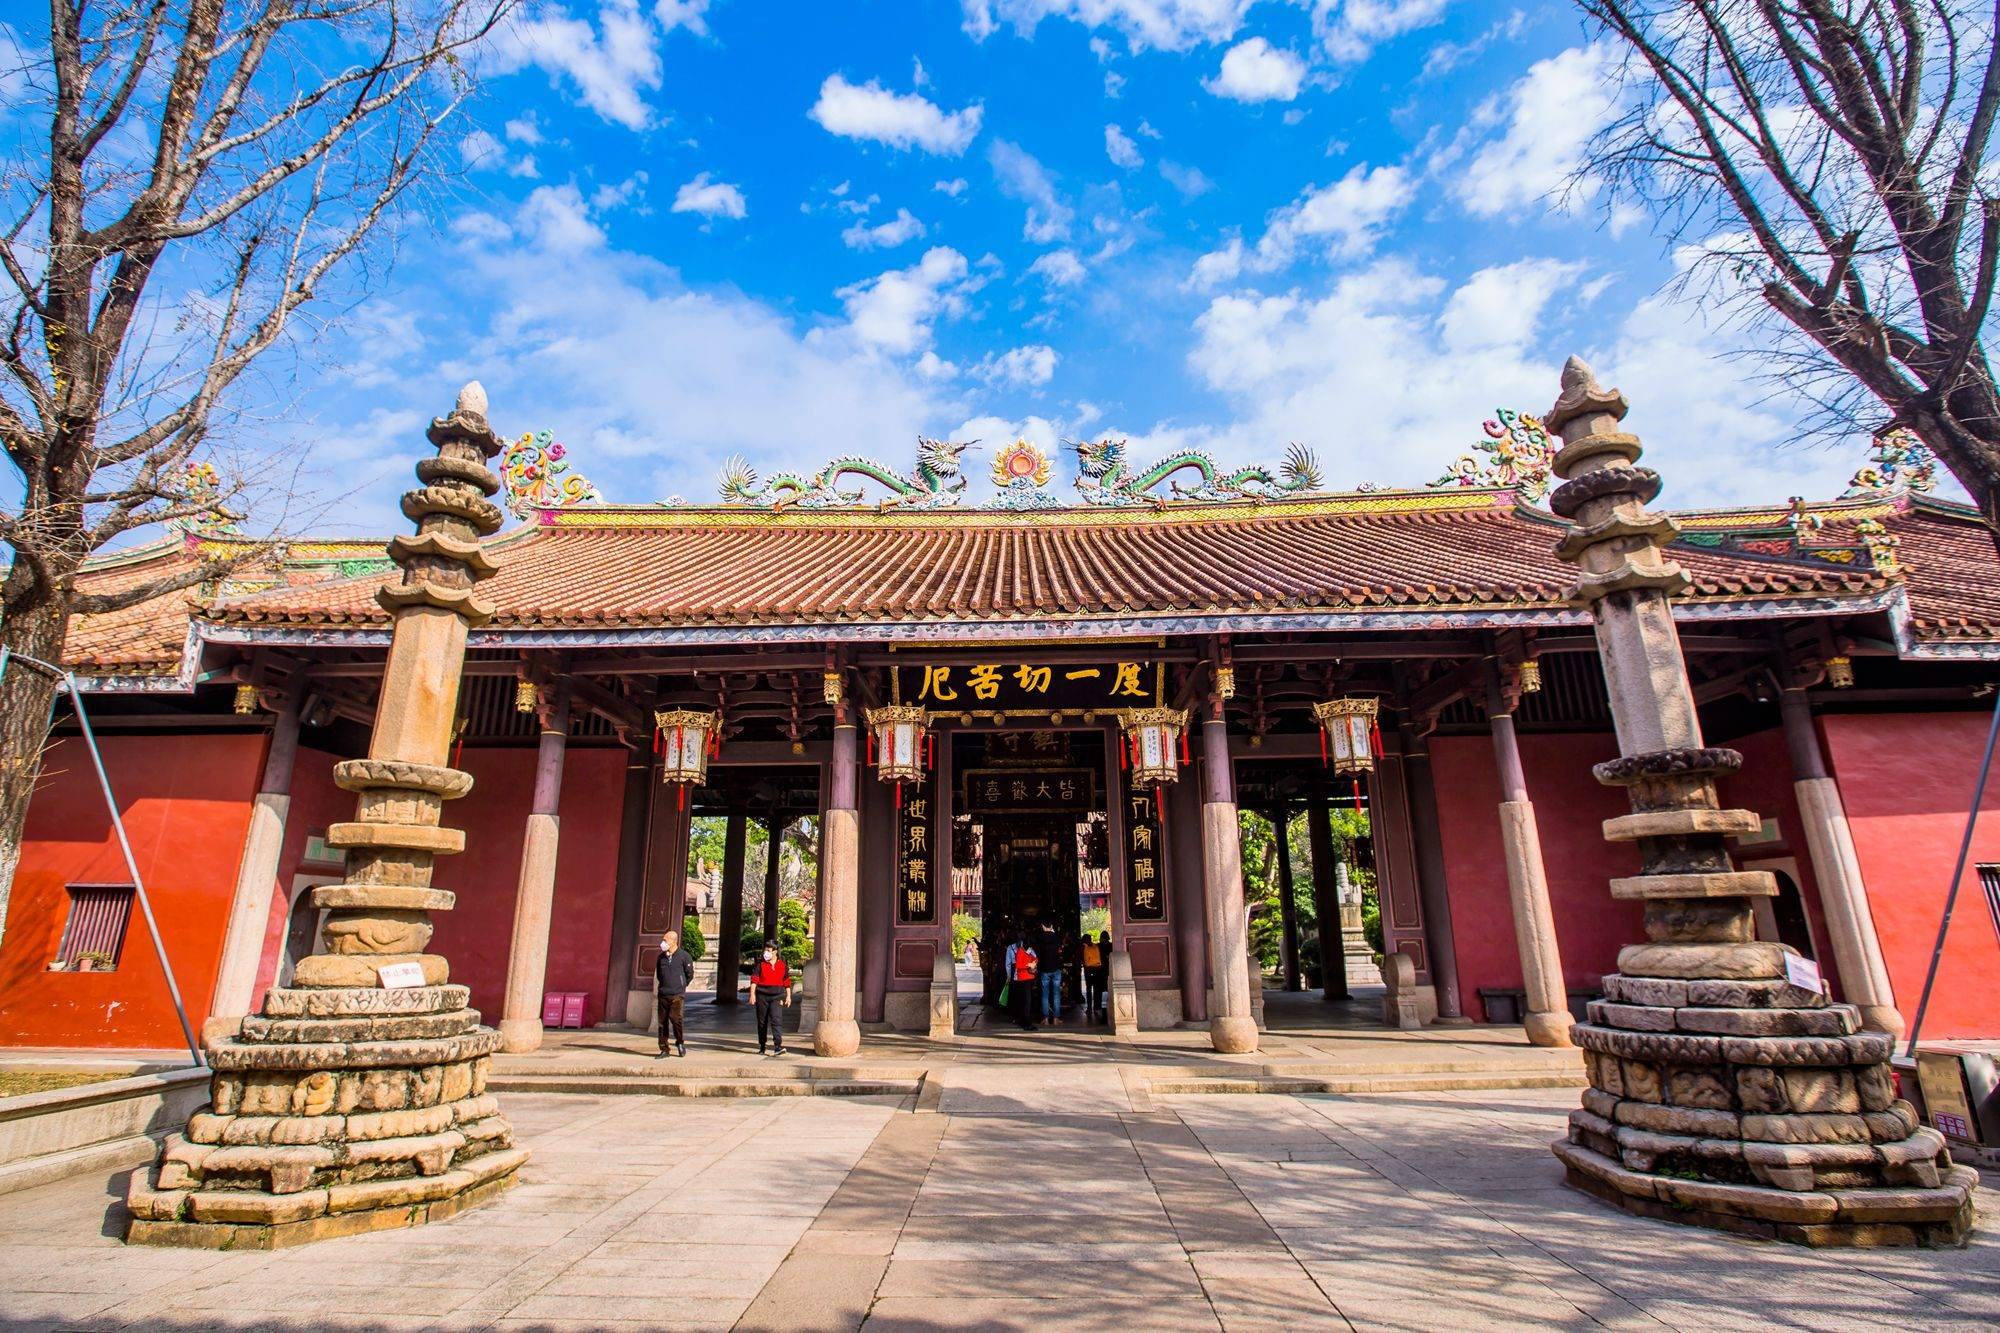 广东潮州开元寺,被称为粤东第一古刹,吸引了众多游客前来